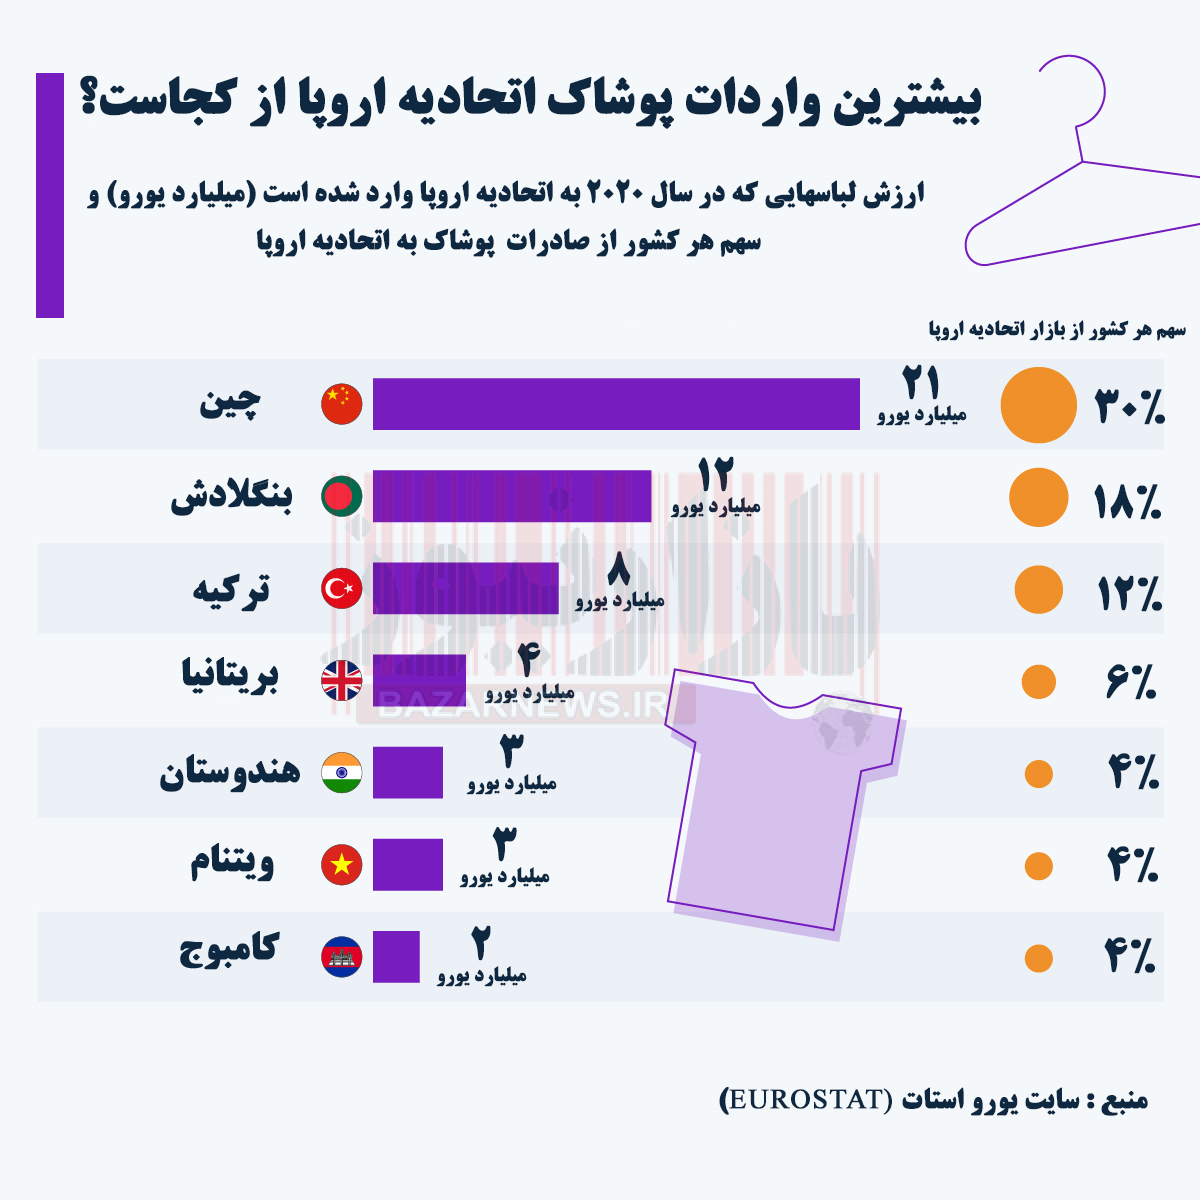 بررسی وضعیت صادرات پوشاک در دنیا/ سهم کمتر از 0.1 درصدی ایران